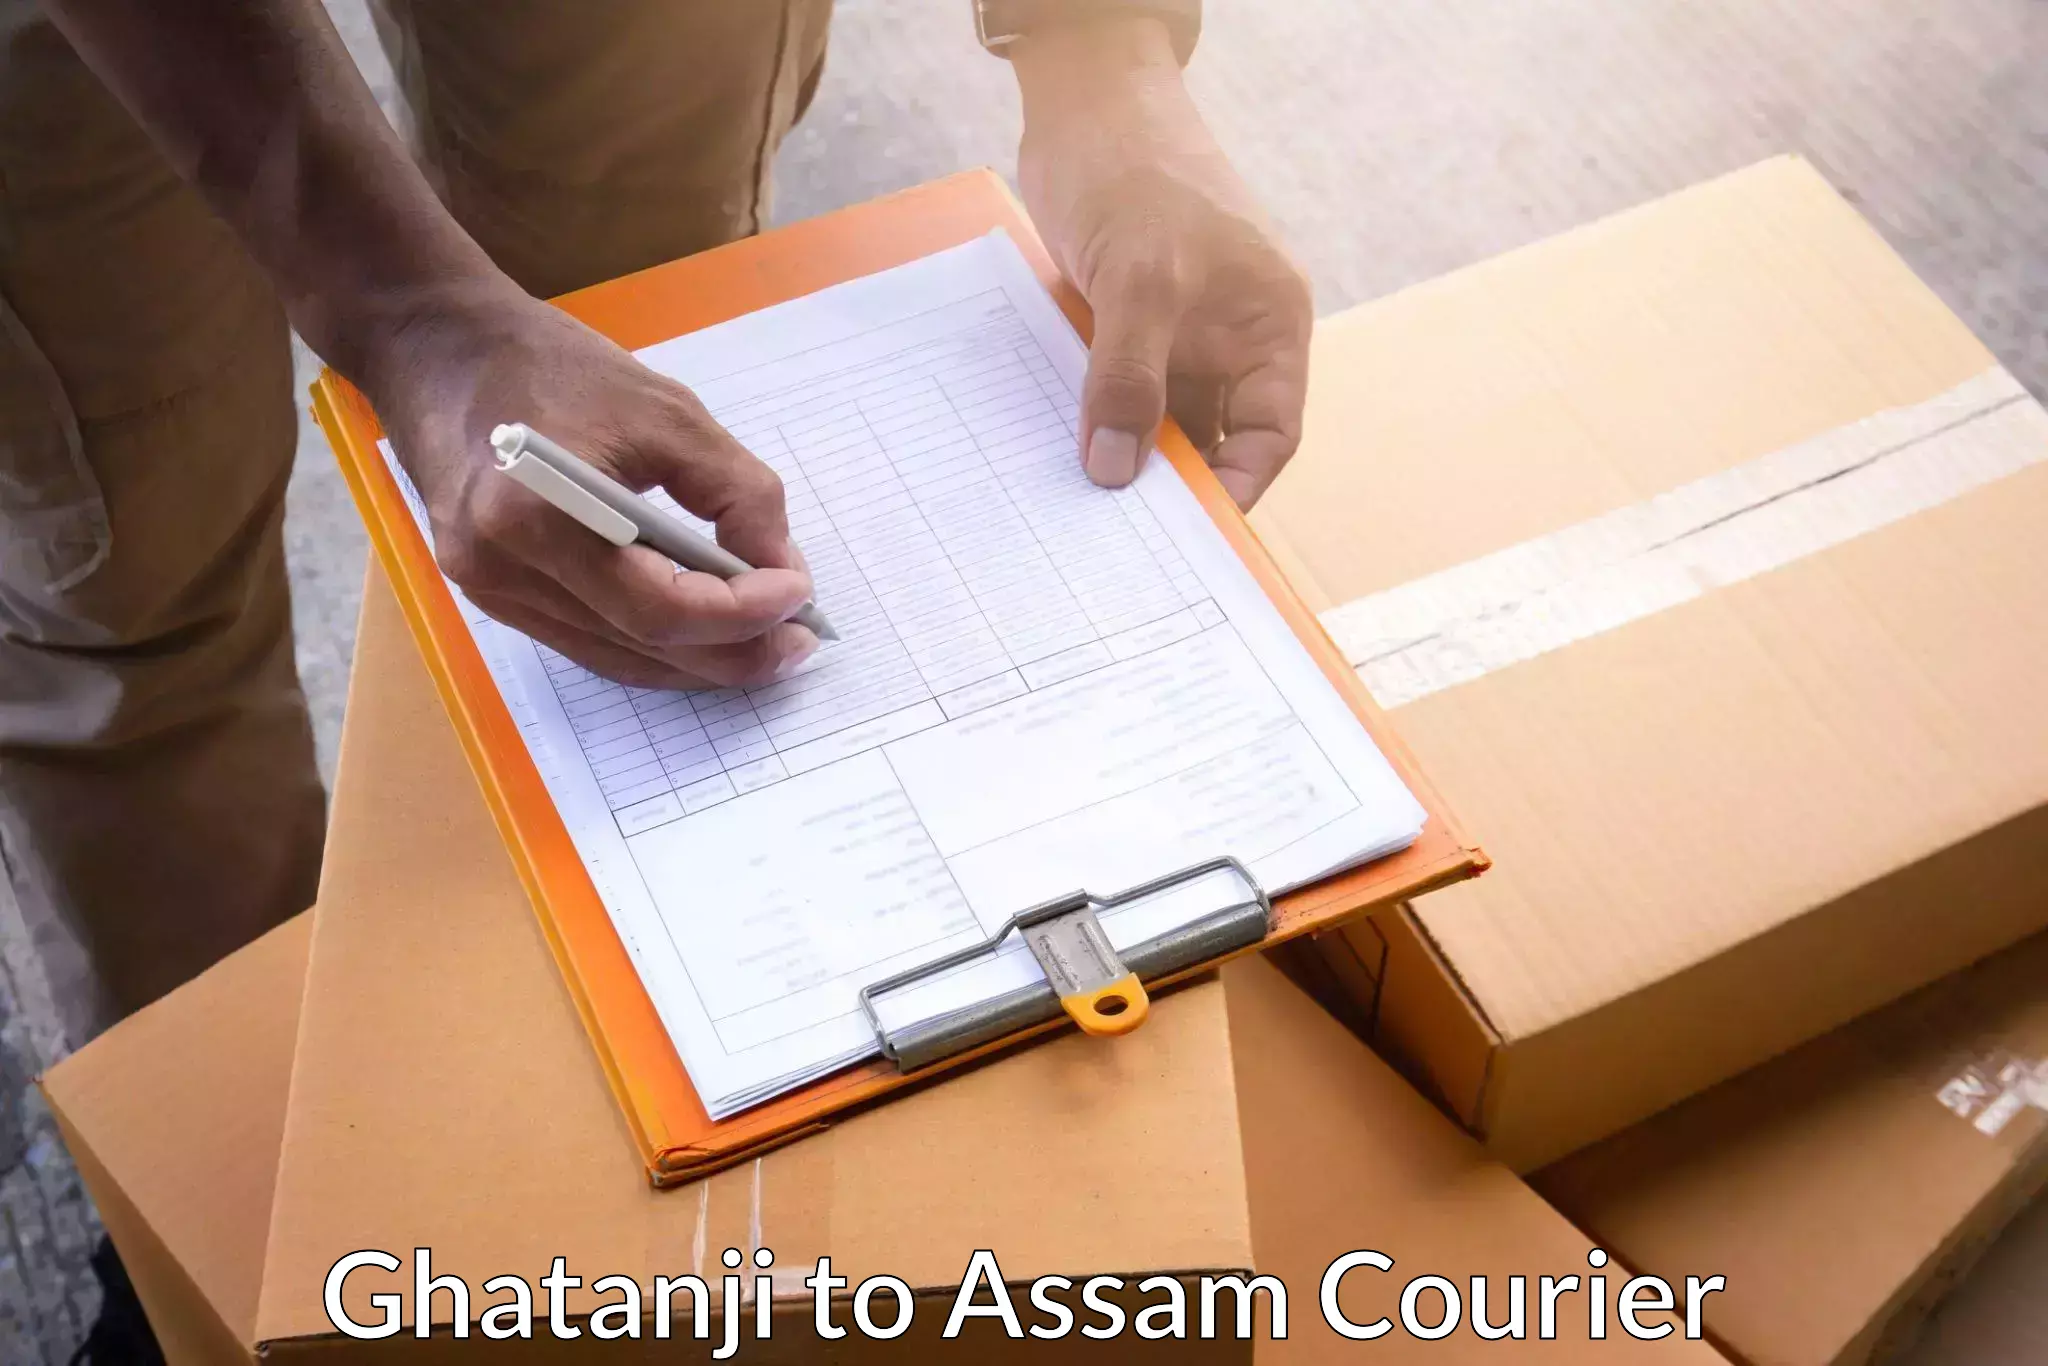 Efficient parcel transport Ghatanji to Assam